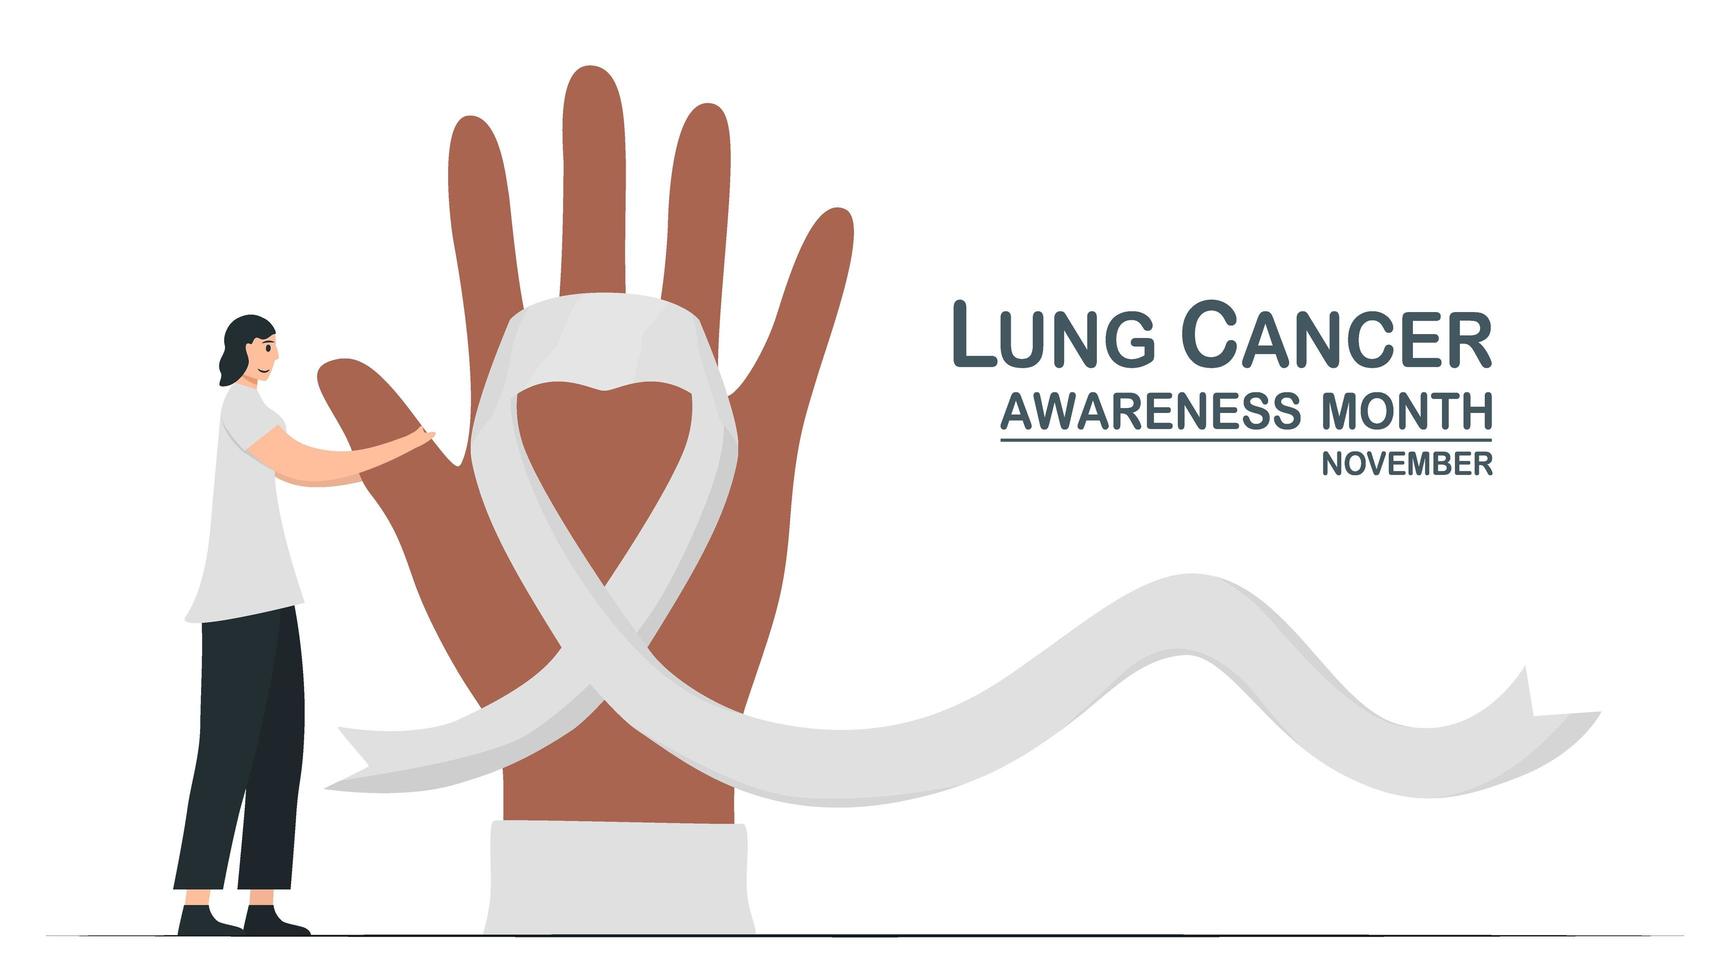 mese di sensibilizzazione sul cancro ai polmoni, novembre. la donna tocca il dito con speranza. grafica per banner, poster, sfondo e pubblicità. illustrazione vettoriale piatto isolato su sfondo bianco.